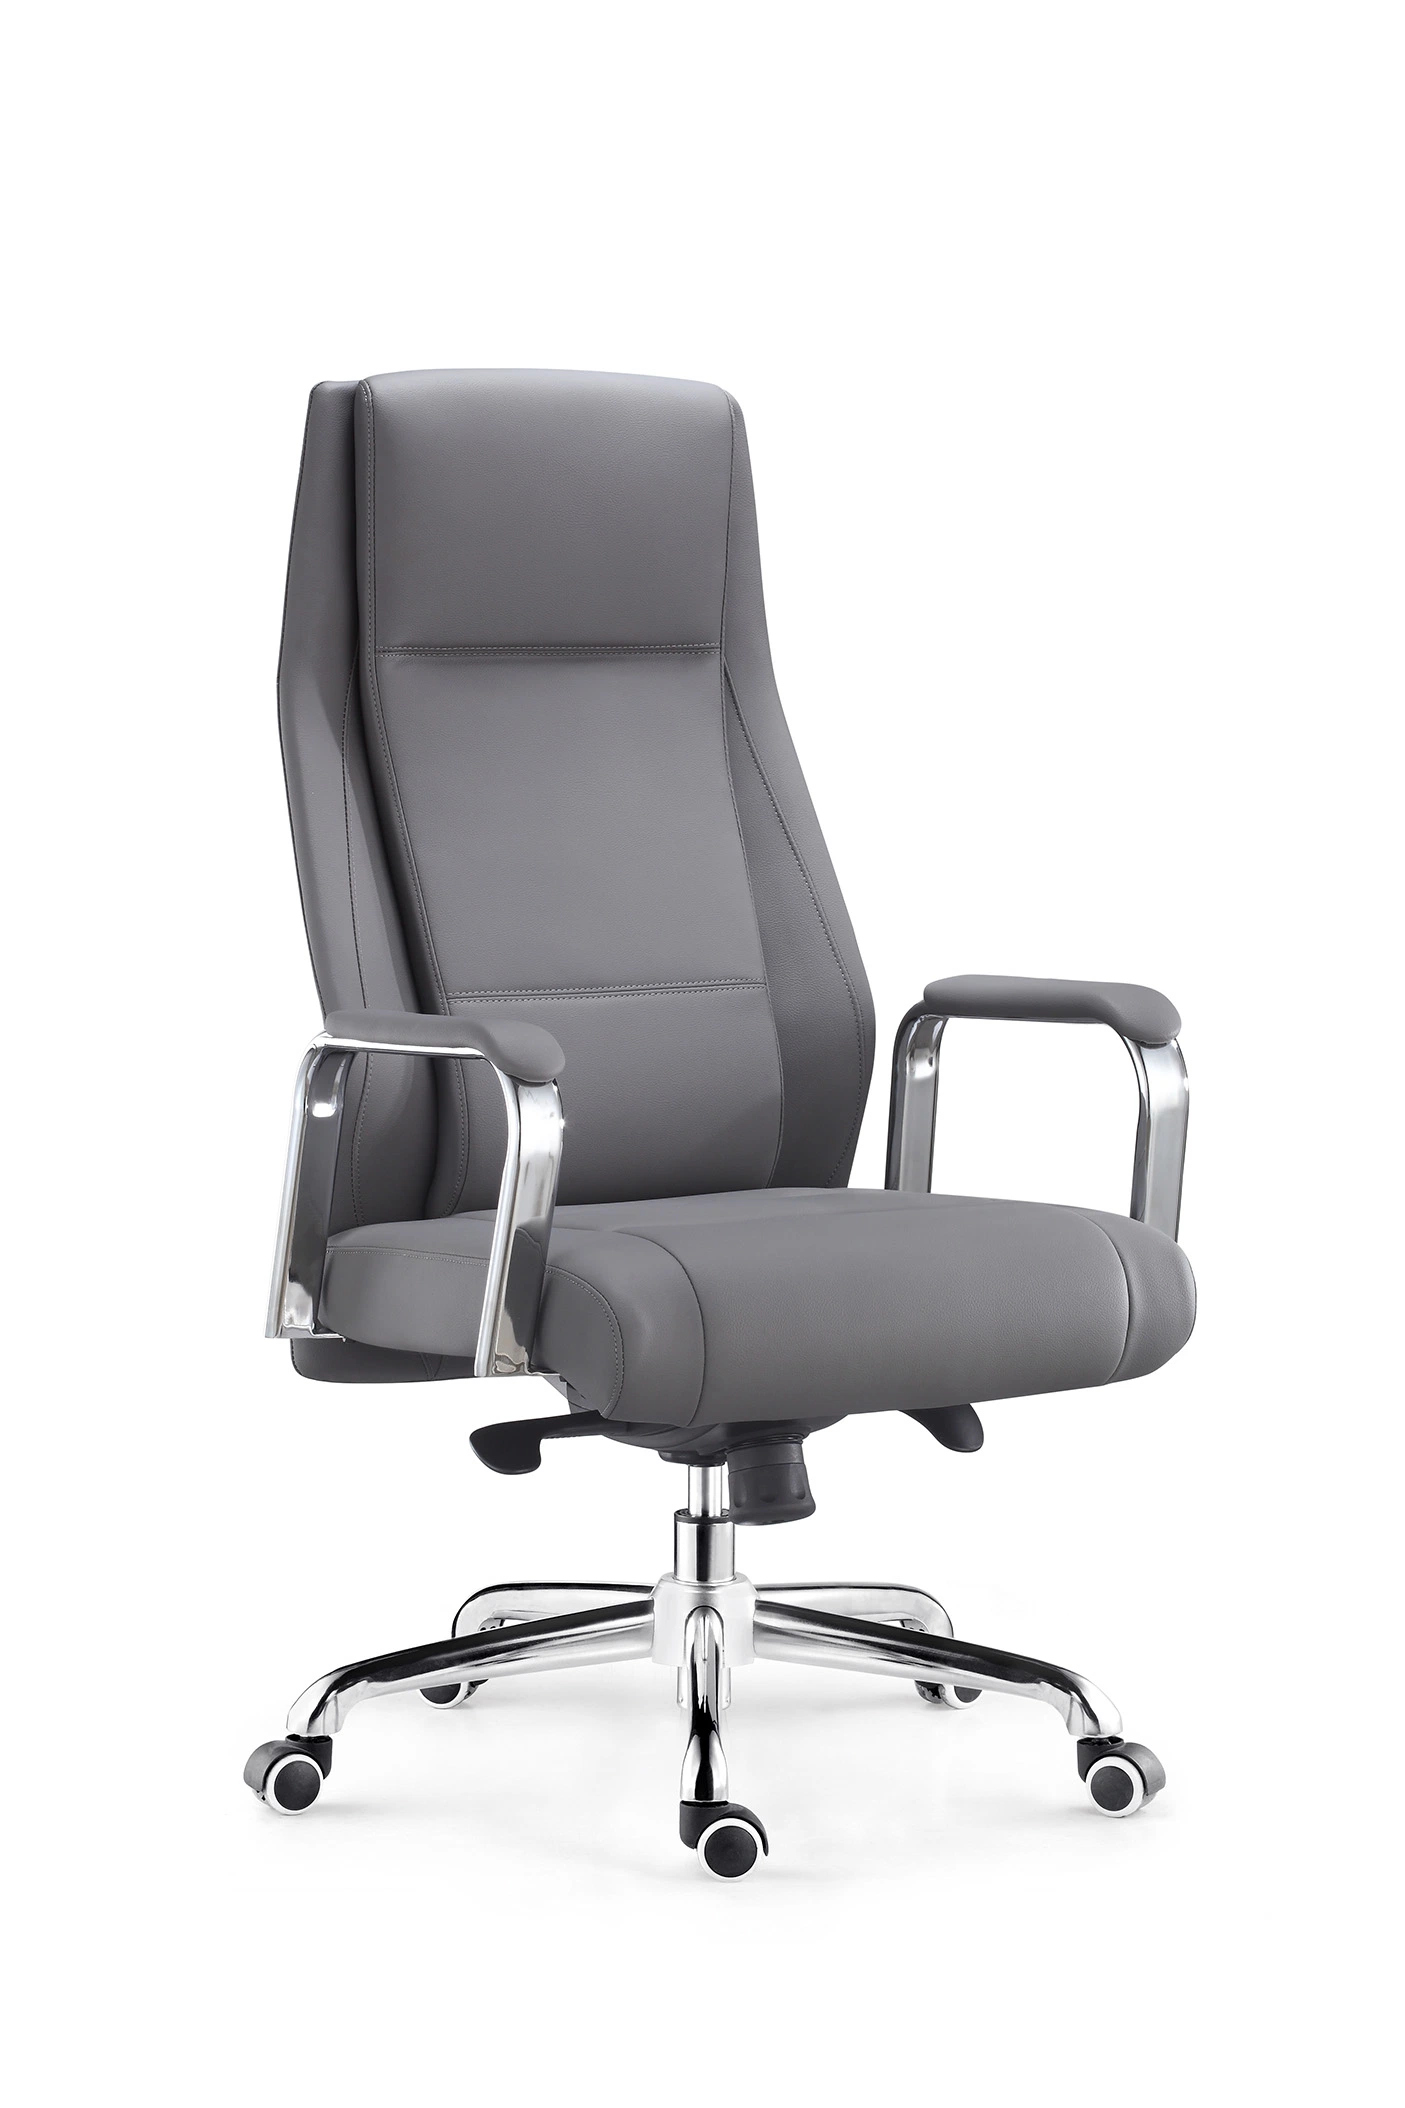 Cadeira de Executivo giratória High Back, cinzenta, com mobiliário de escritório e venda a quente Para o Gestor